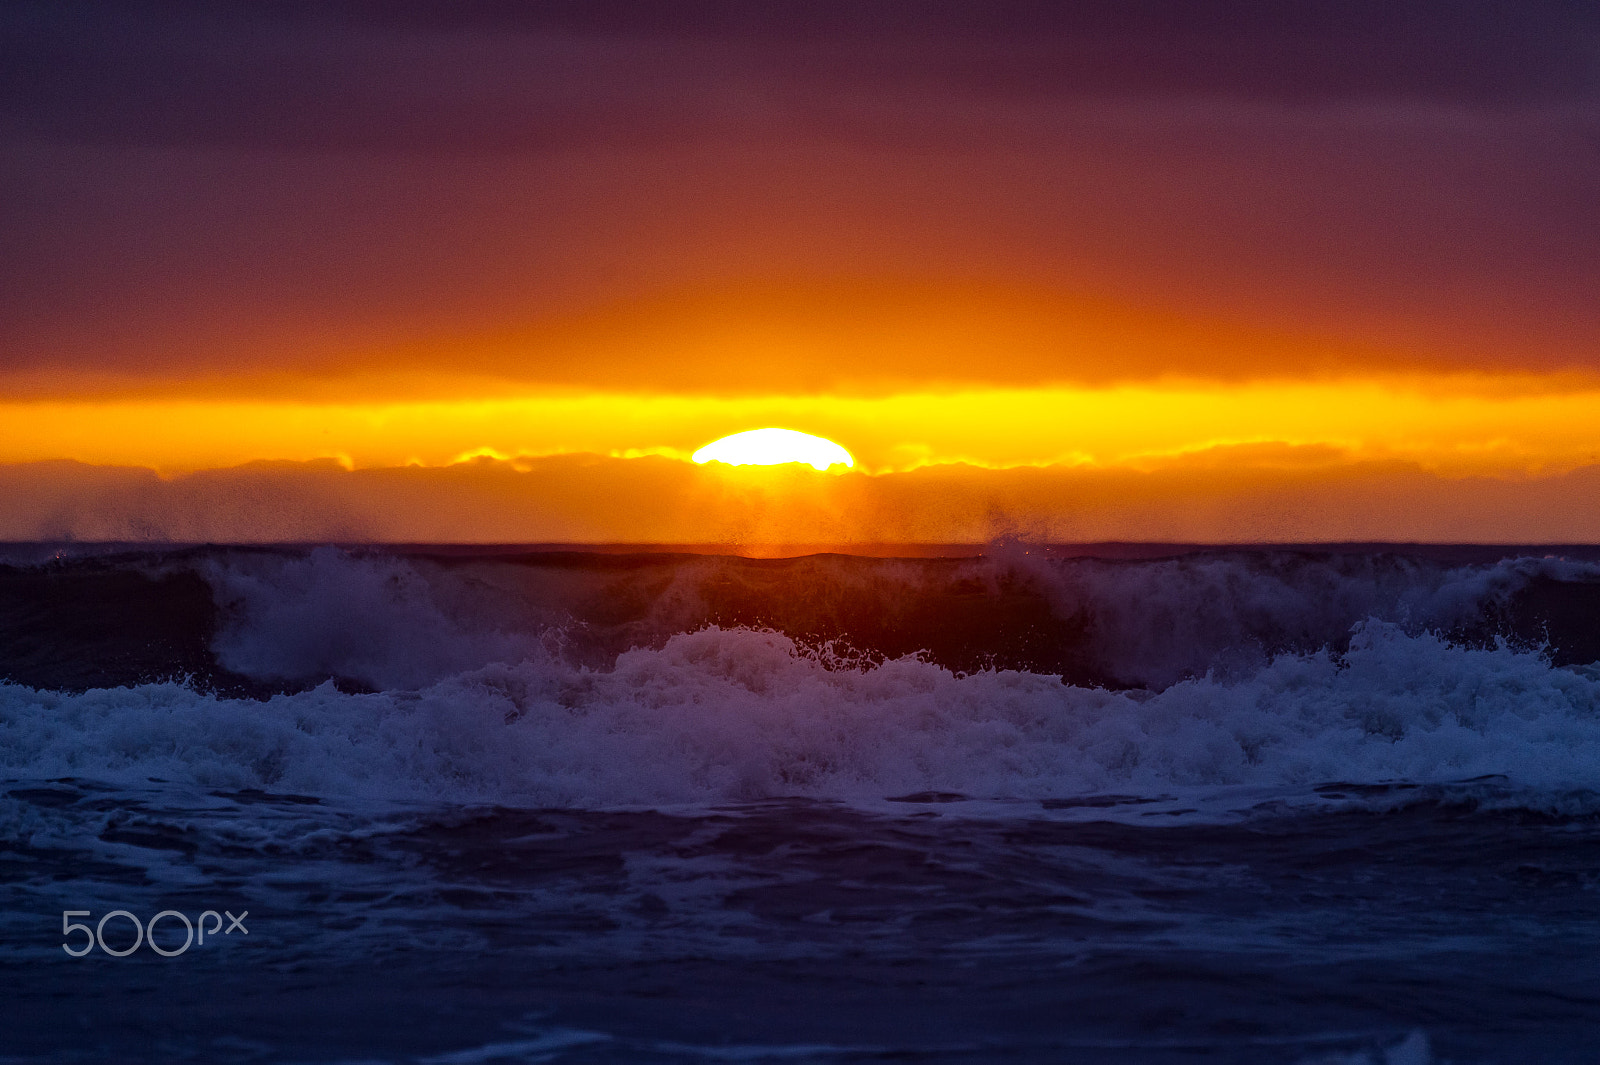 Nikon D3S + Nikon AF-S Nikkor 80-400mm F4.5-5.6G ED VR sample photo. Waves at sunset in oceanside - february 11, 2017 photography